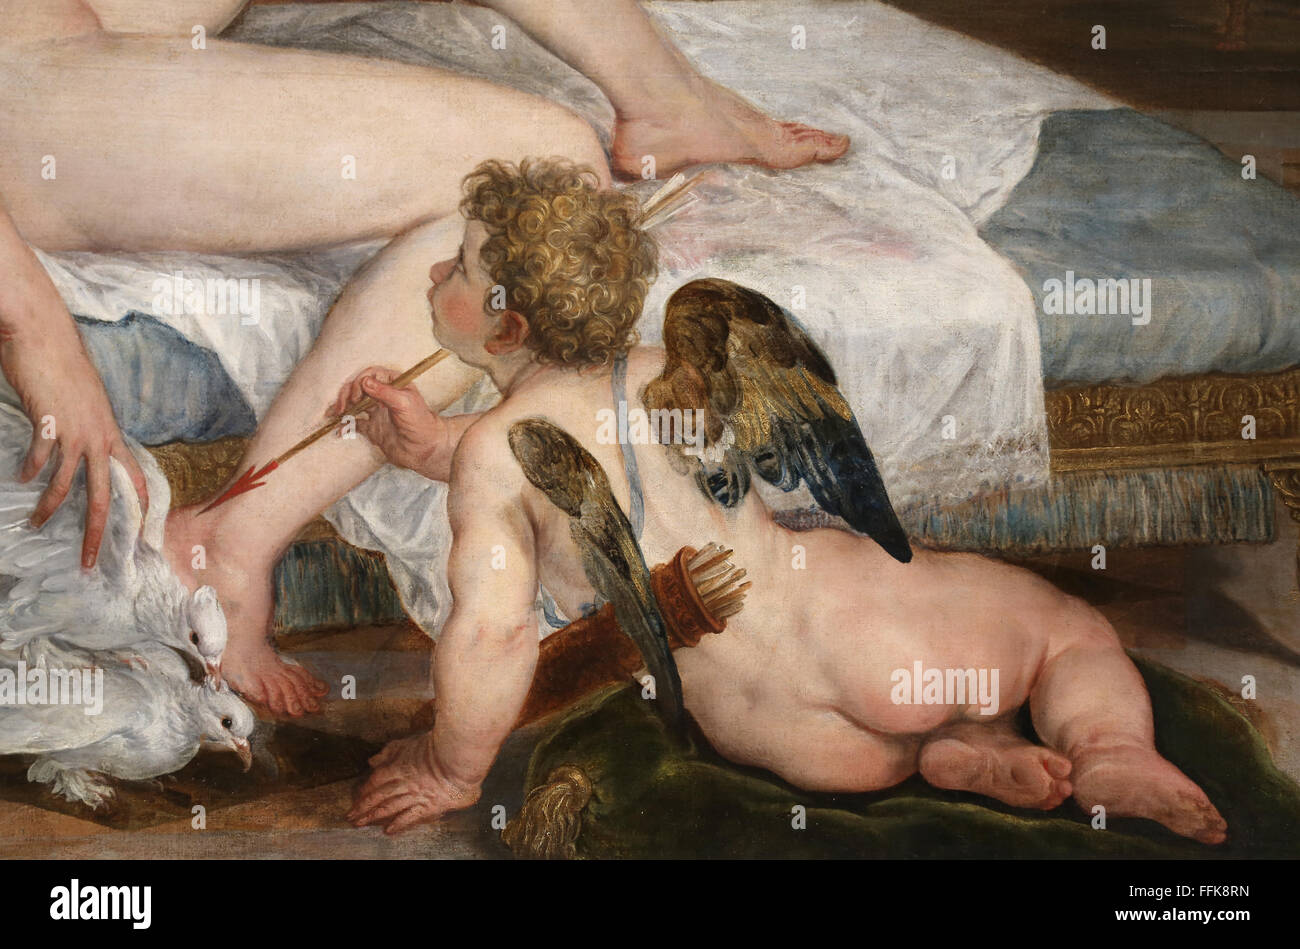 Venus y Amor, de 1554. Por pintor holandés Lambert Sustris (1515-1584). El manierismo. El Museo del Louvre. París. Francia. Detalle de amor. Foto de stock